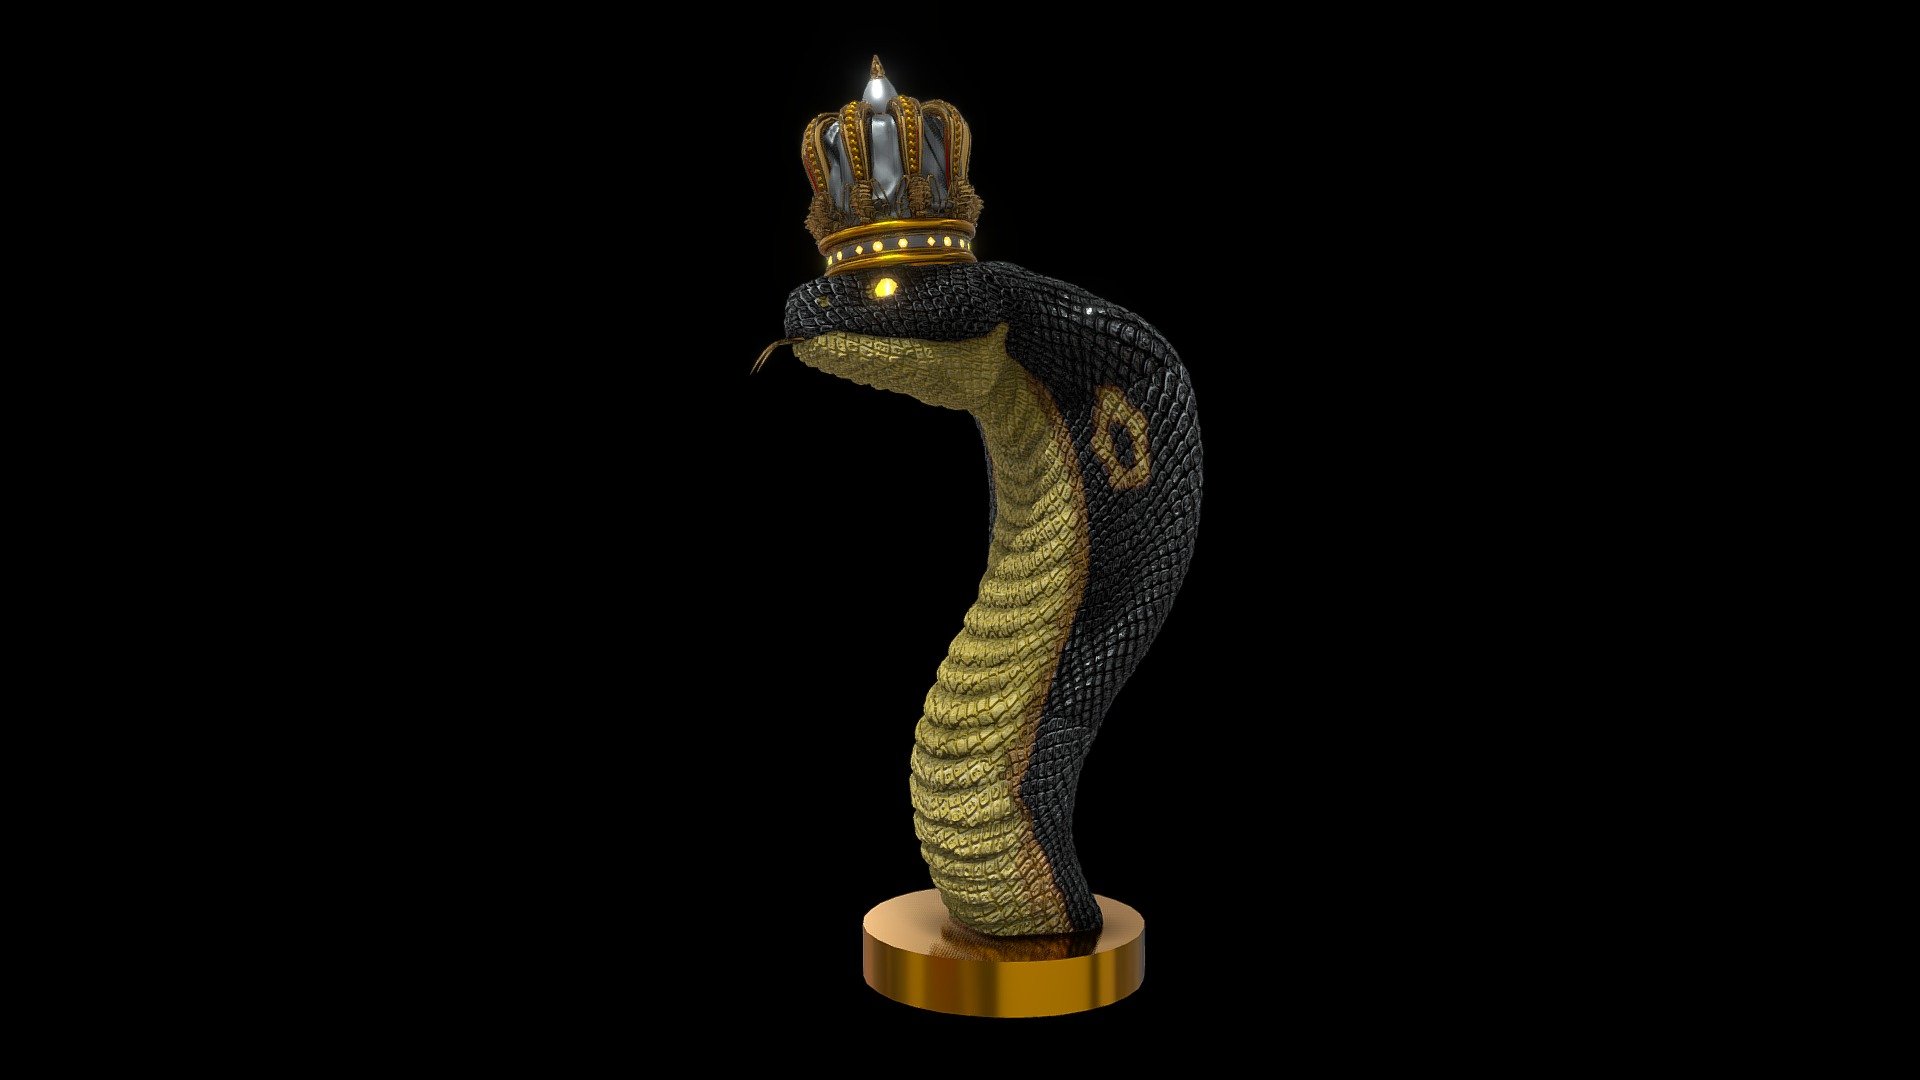 King Cobra - King Cobra - 3D model by Invictus fulgur (@Invictus_fulgur) 3d model